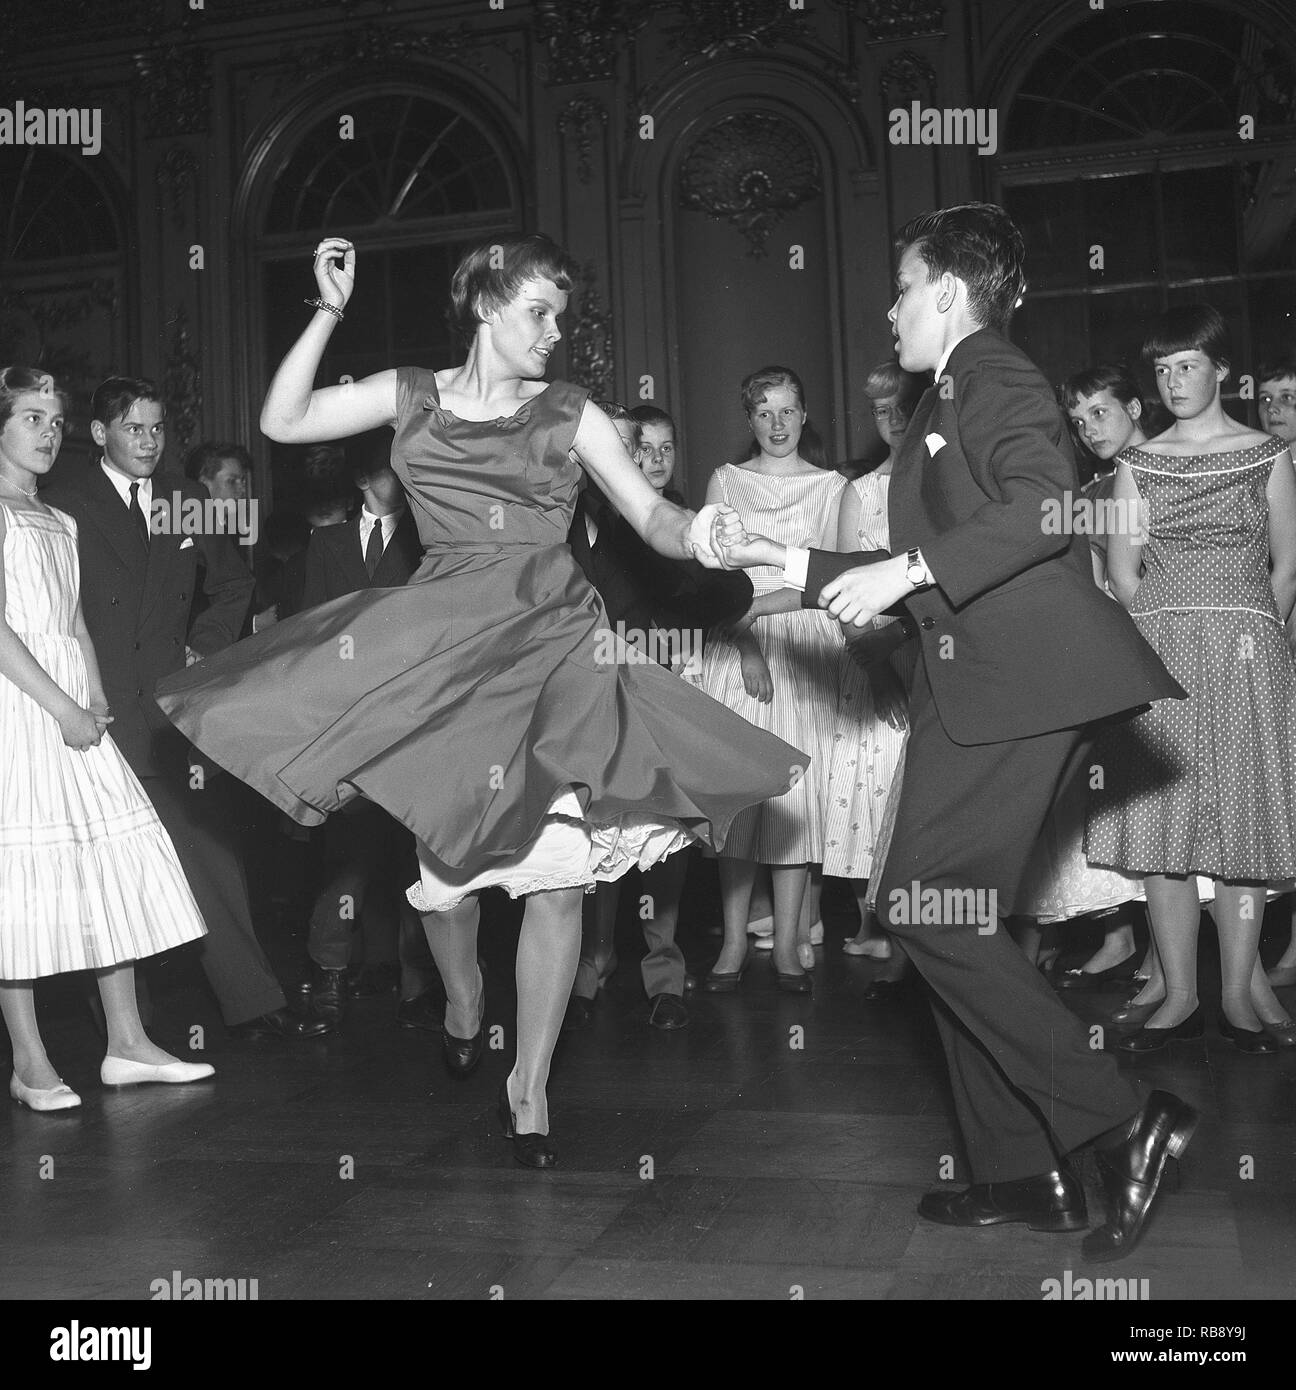 Rock N Roll Dancing 1950s Stockfotos und -bilder Kaufen - Alamy